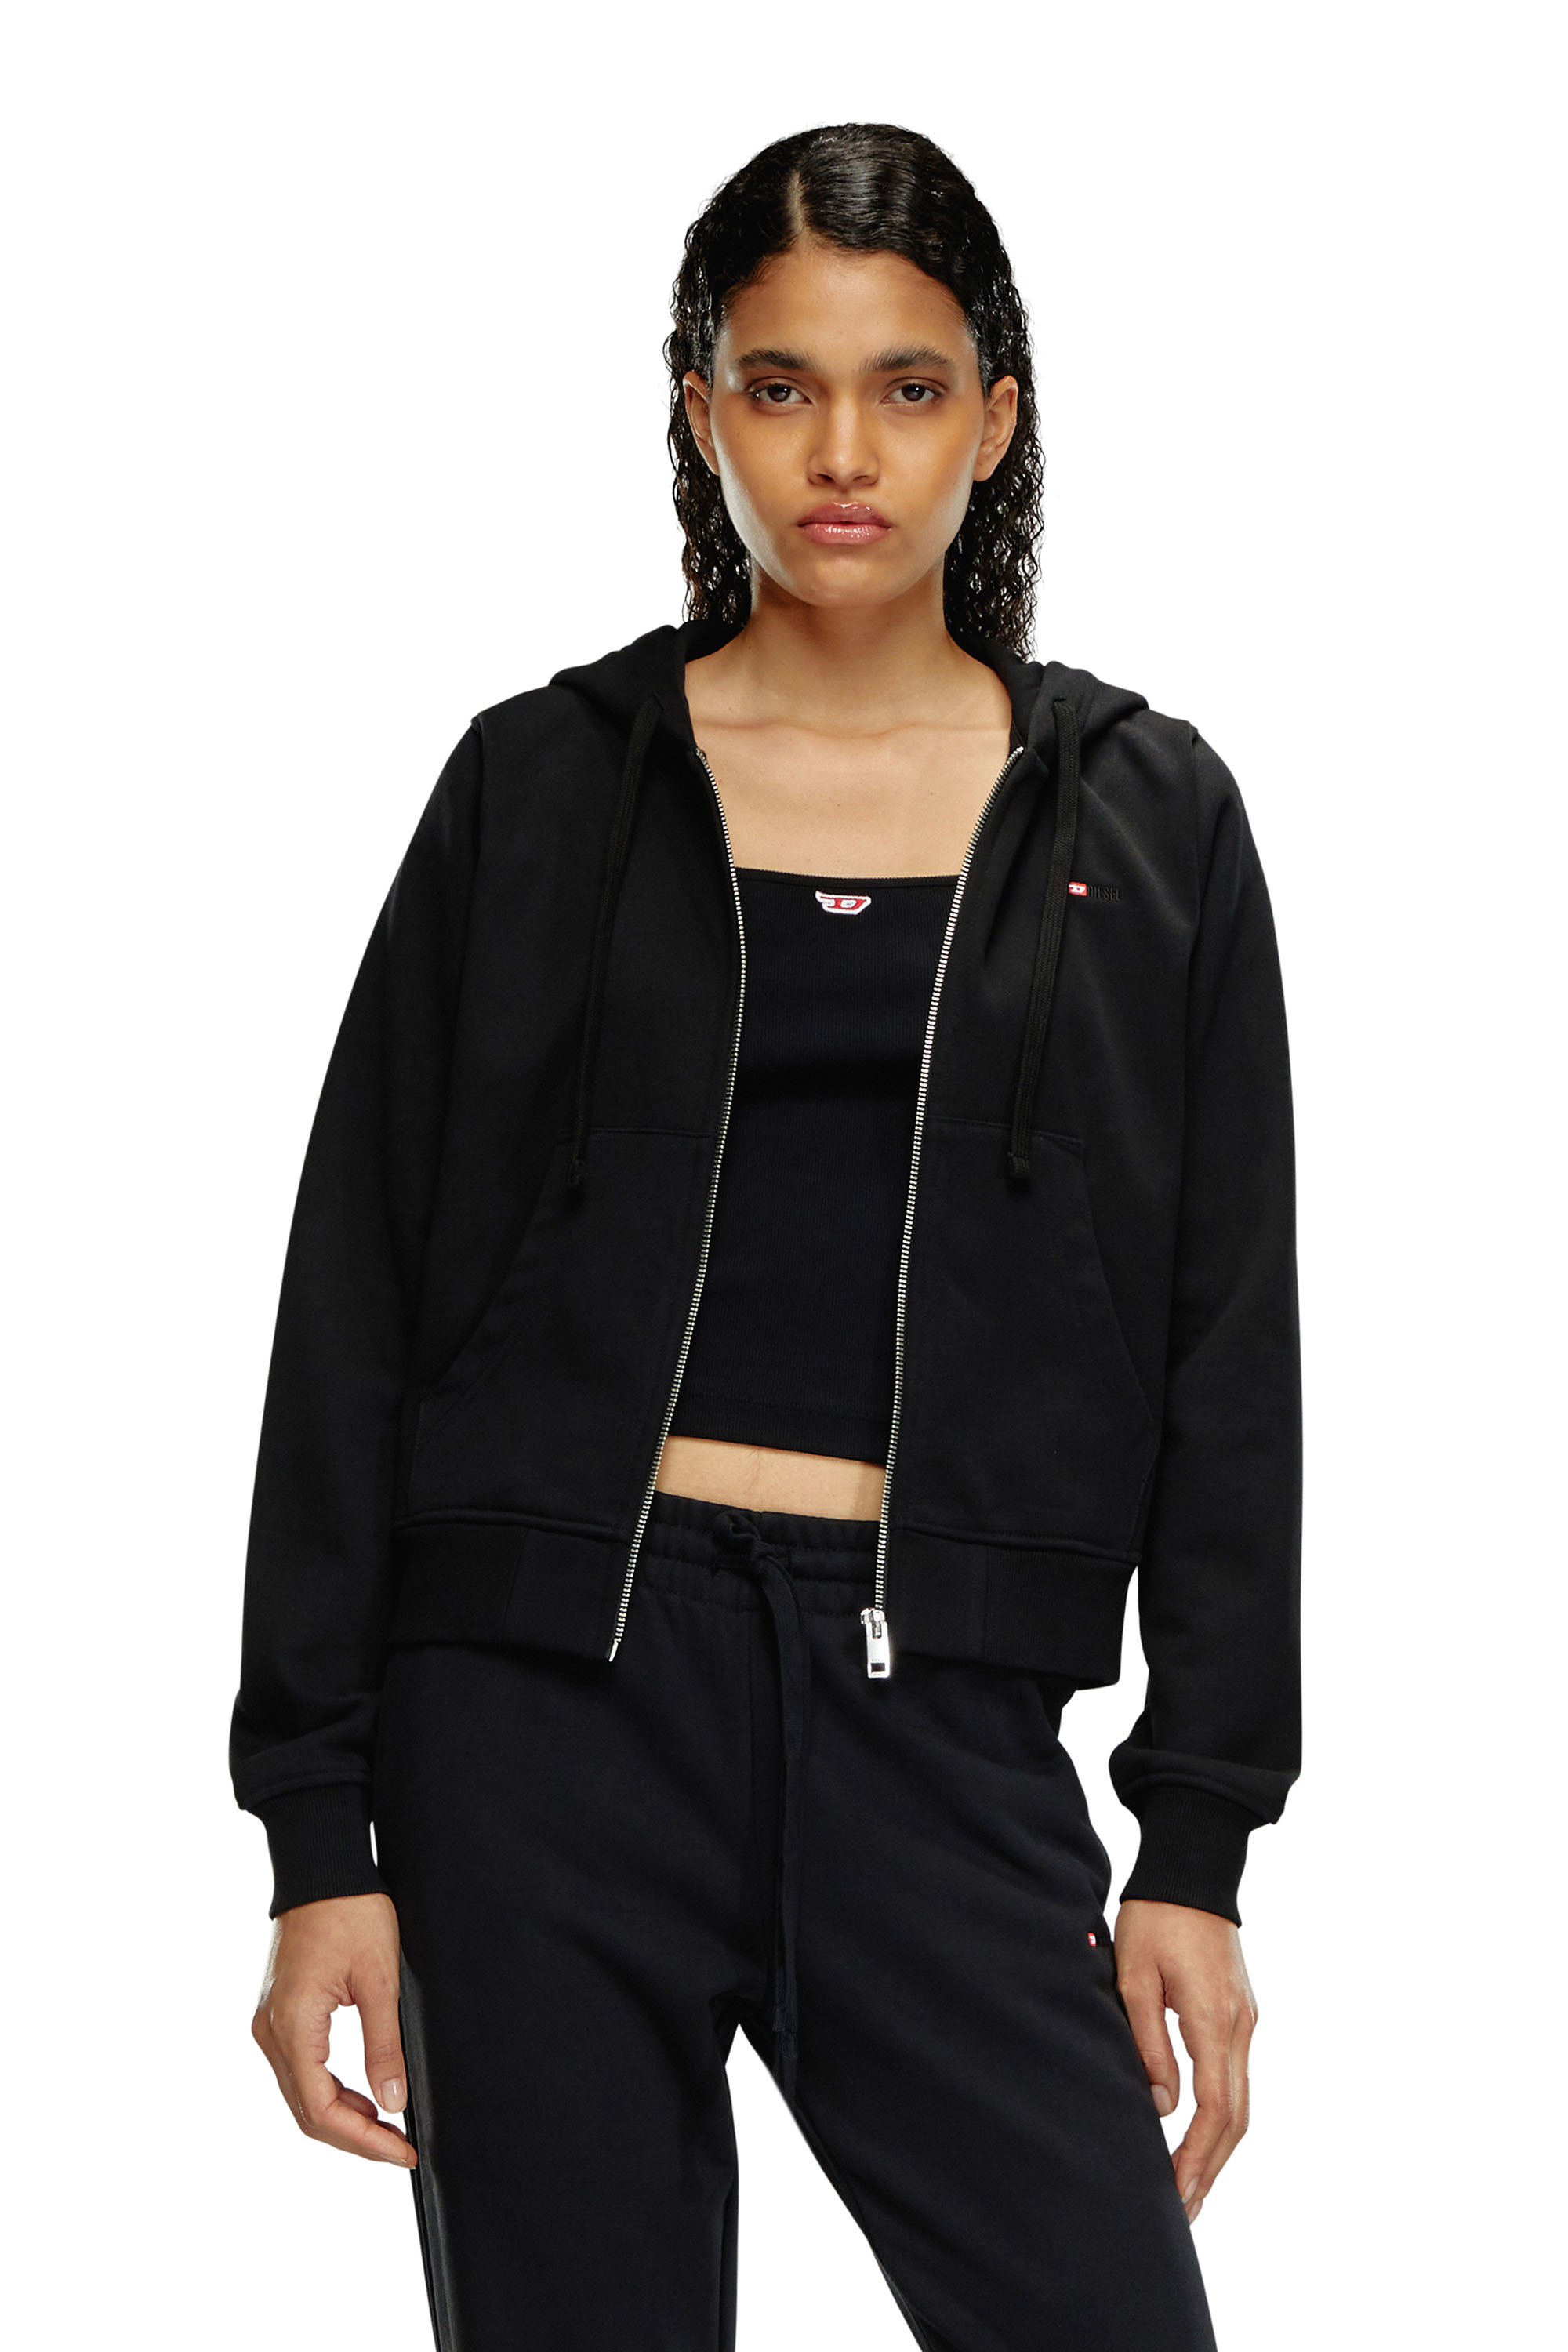 Diesel - Sweat-shirt à capuche avec micro logo brodé - Pull Cotton - Femme - Noir